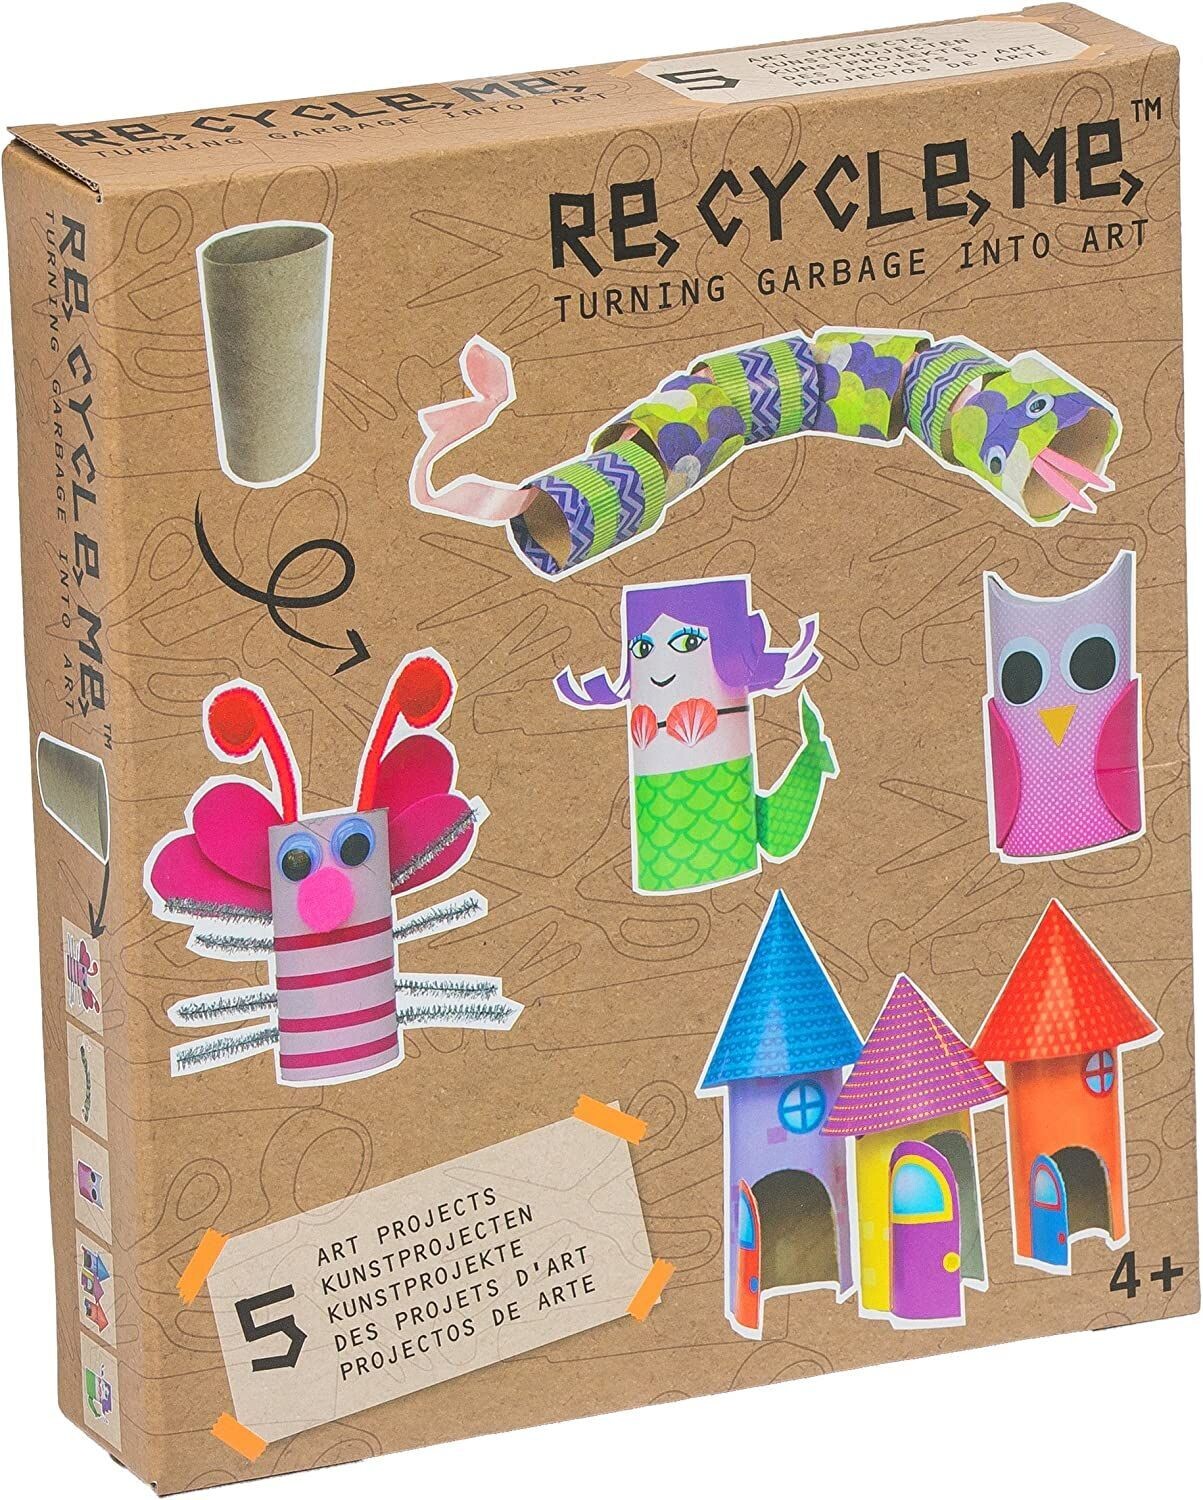 Re cycle me Crea giochi riciclando